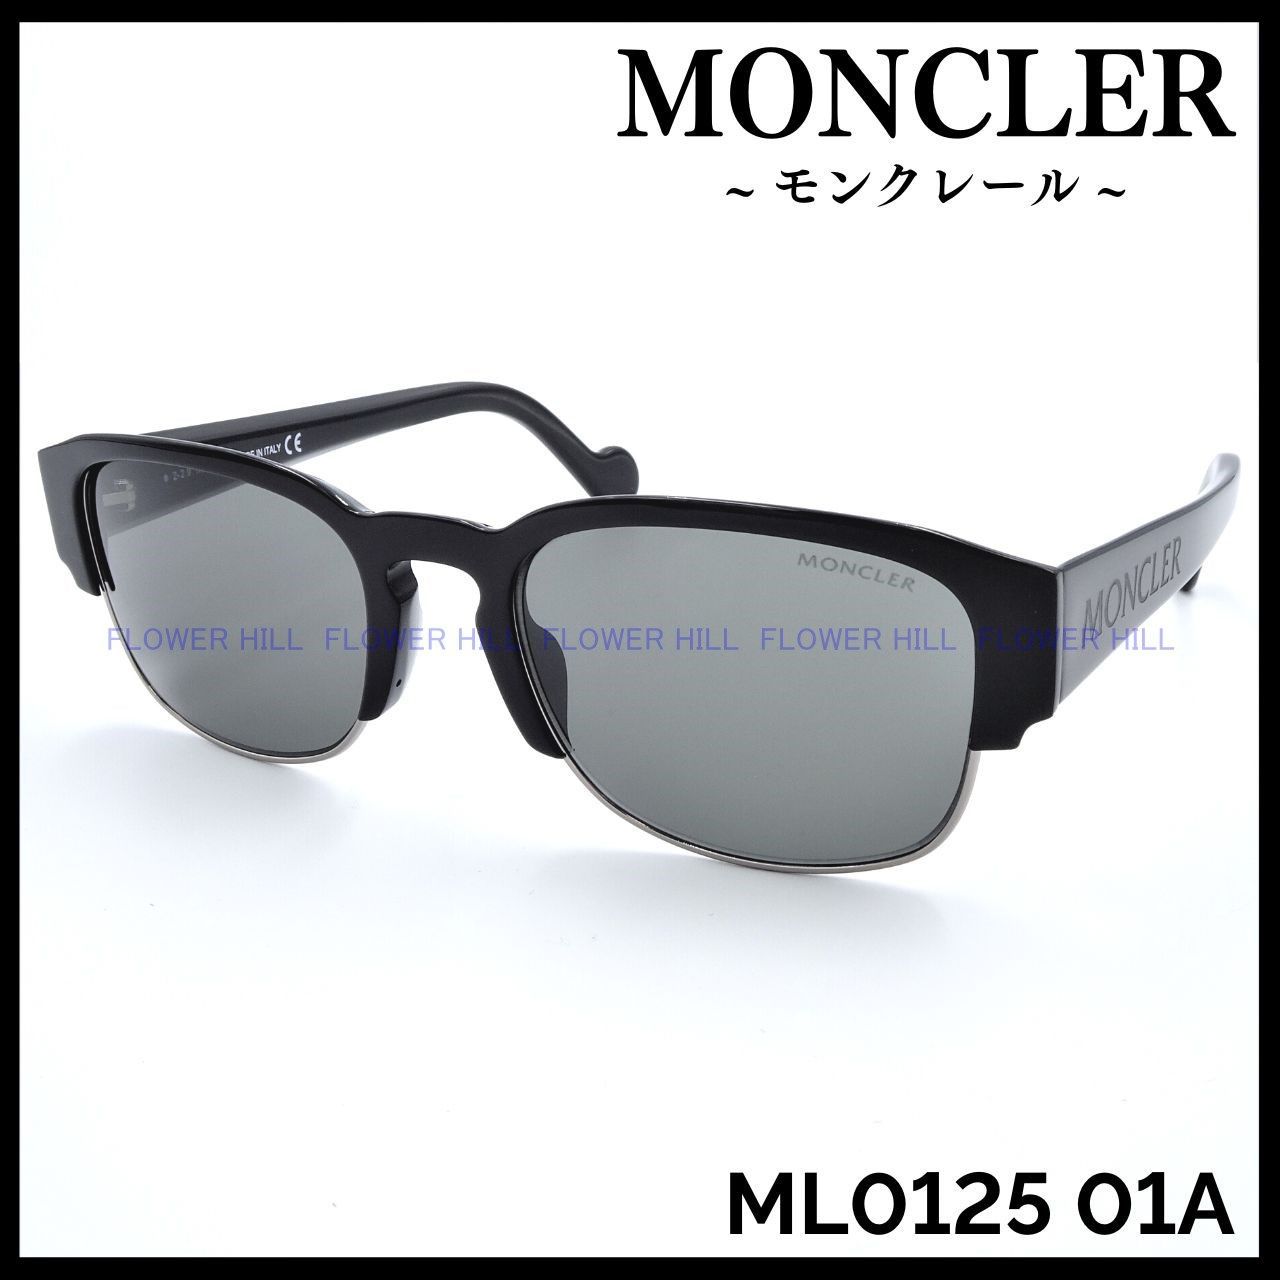 モンクレール サングラス ML0125 01A イタリア製 ブラック ブロー